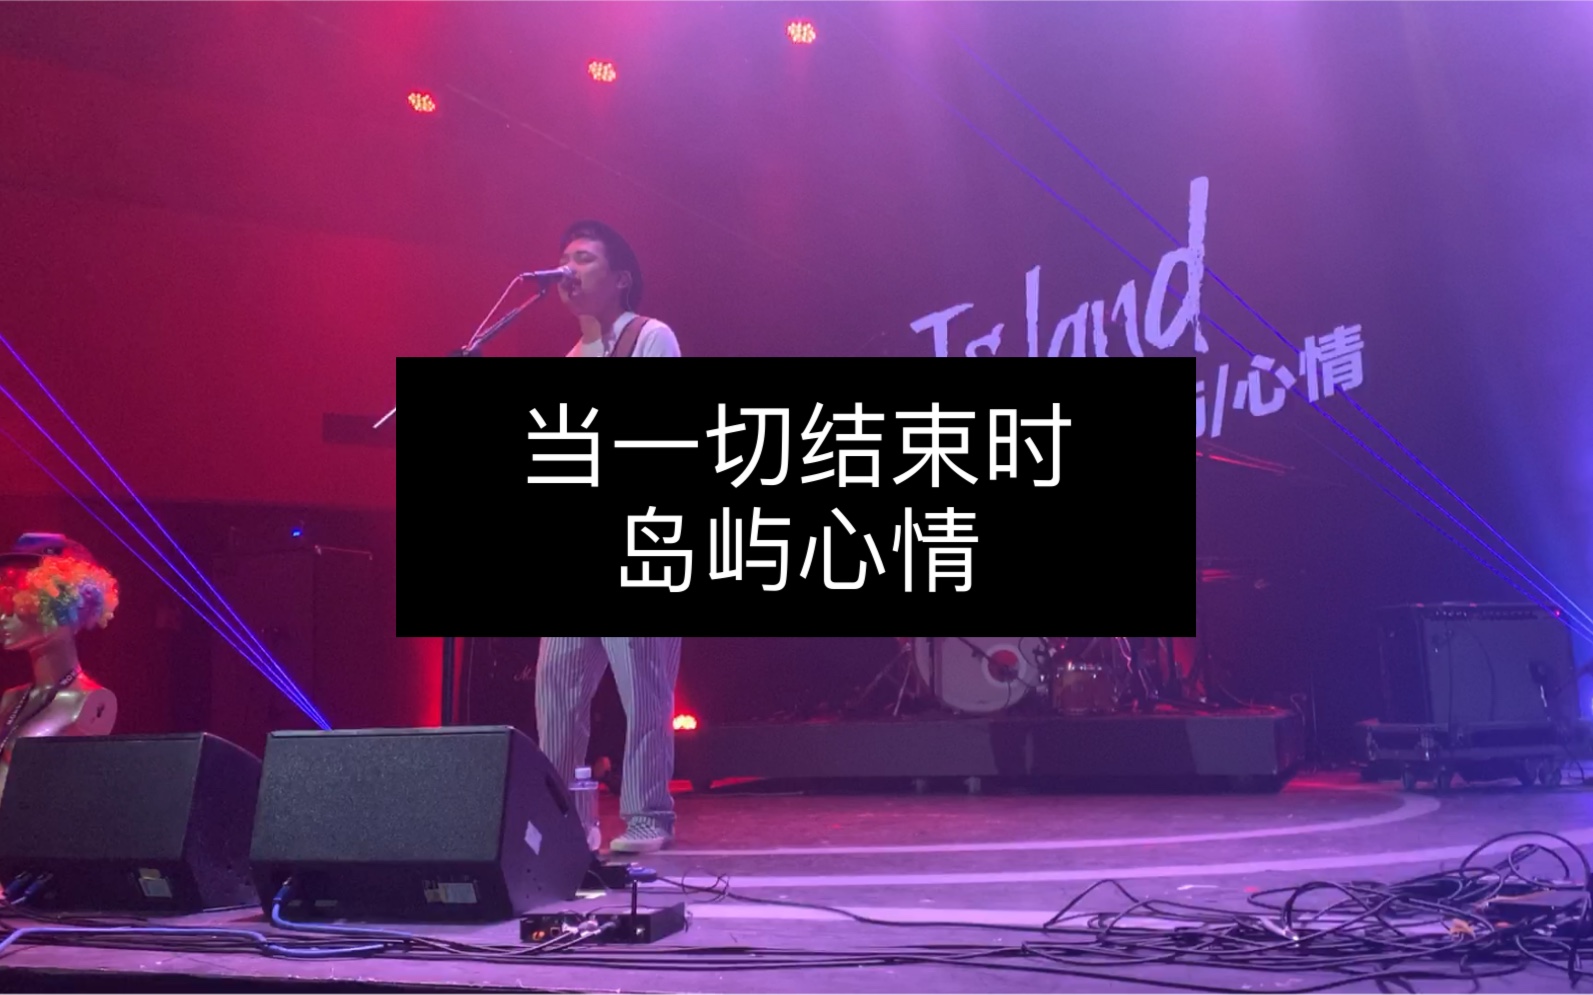 岛屿心情乐队 playing at Ola Livehouse in Nanjing China 2019 | Mean Bear Media